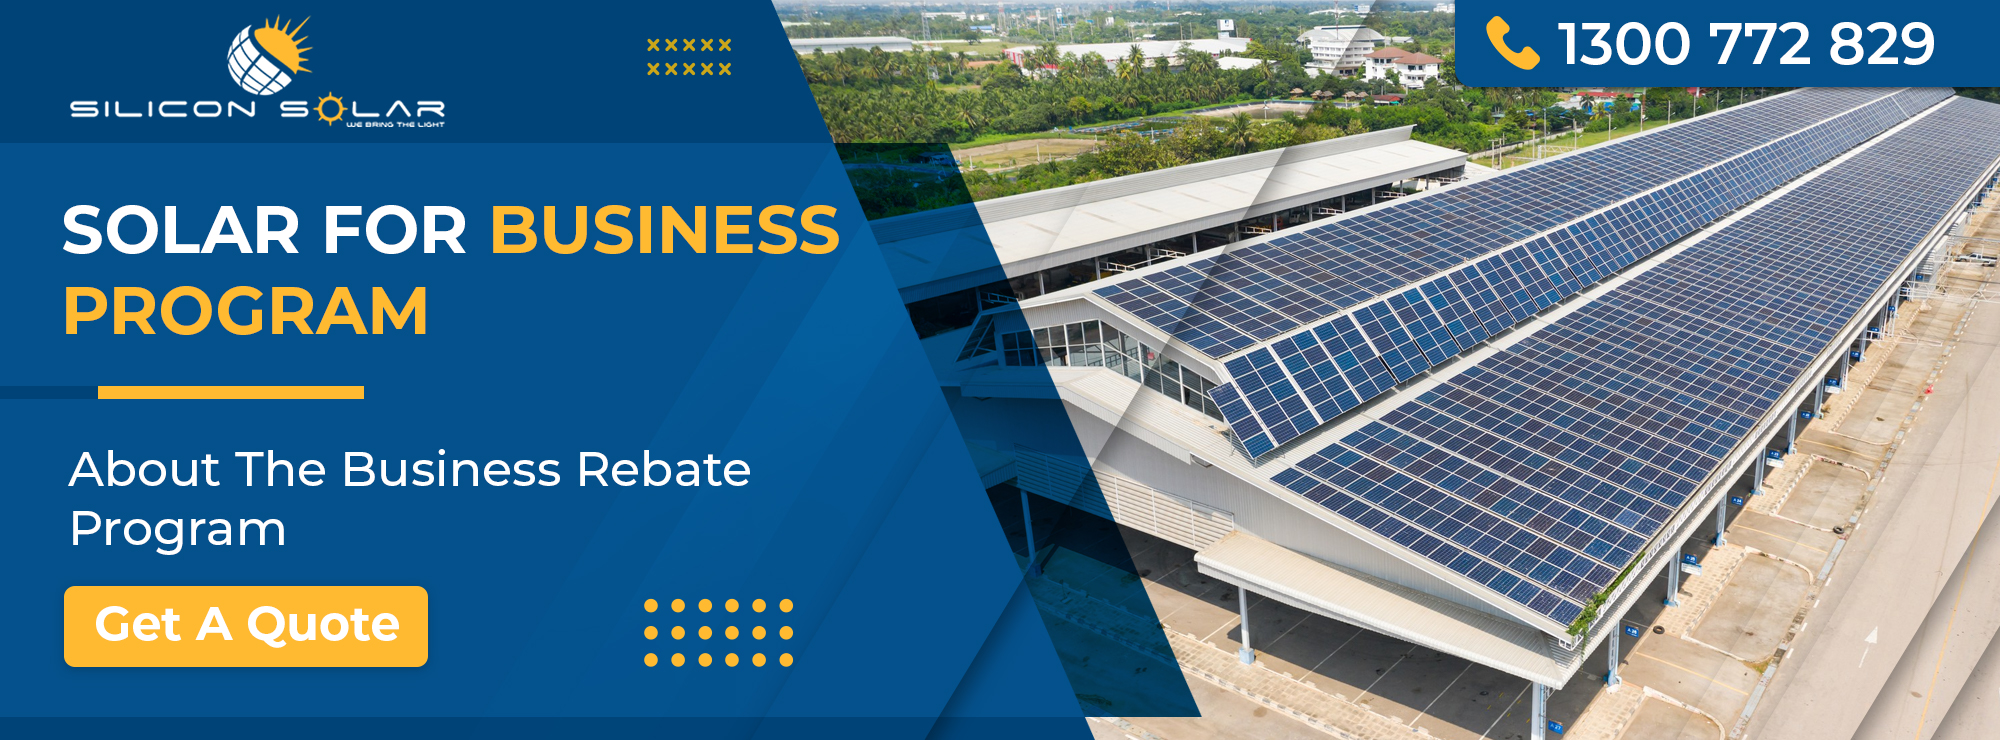 Solar For Business Program Business Rebate Program